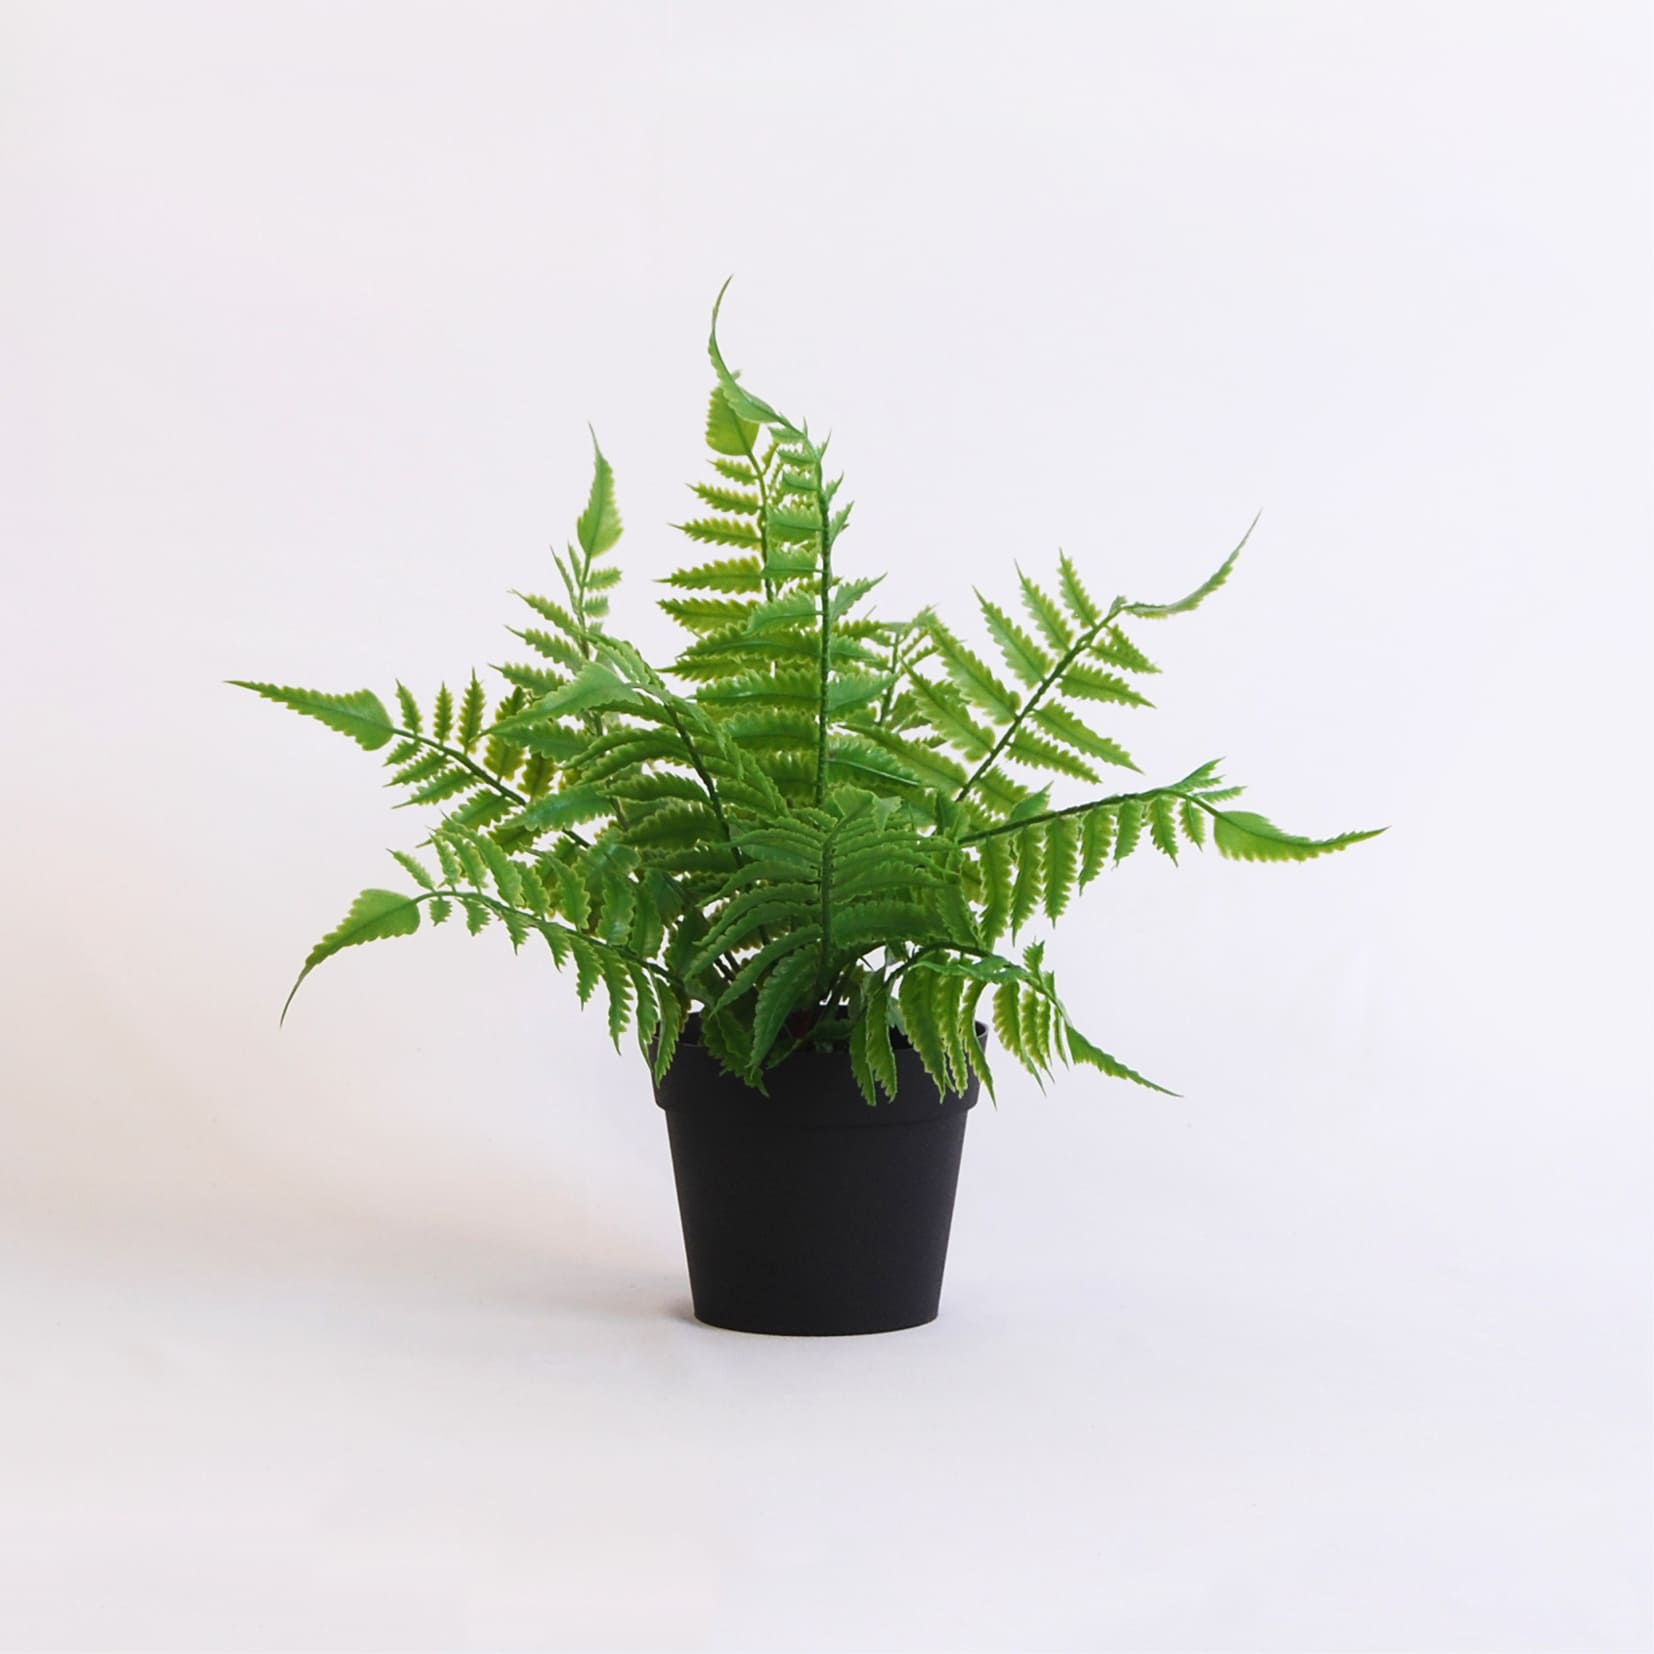 Best Deal for Jutom Artificial Ferns for Outdoors Long Silk Artificial